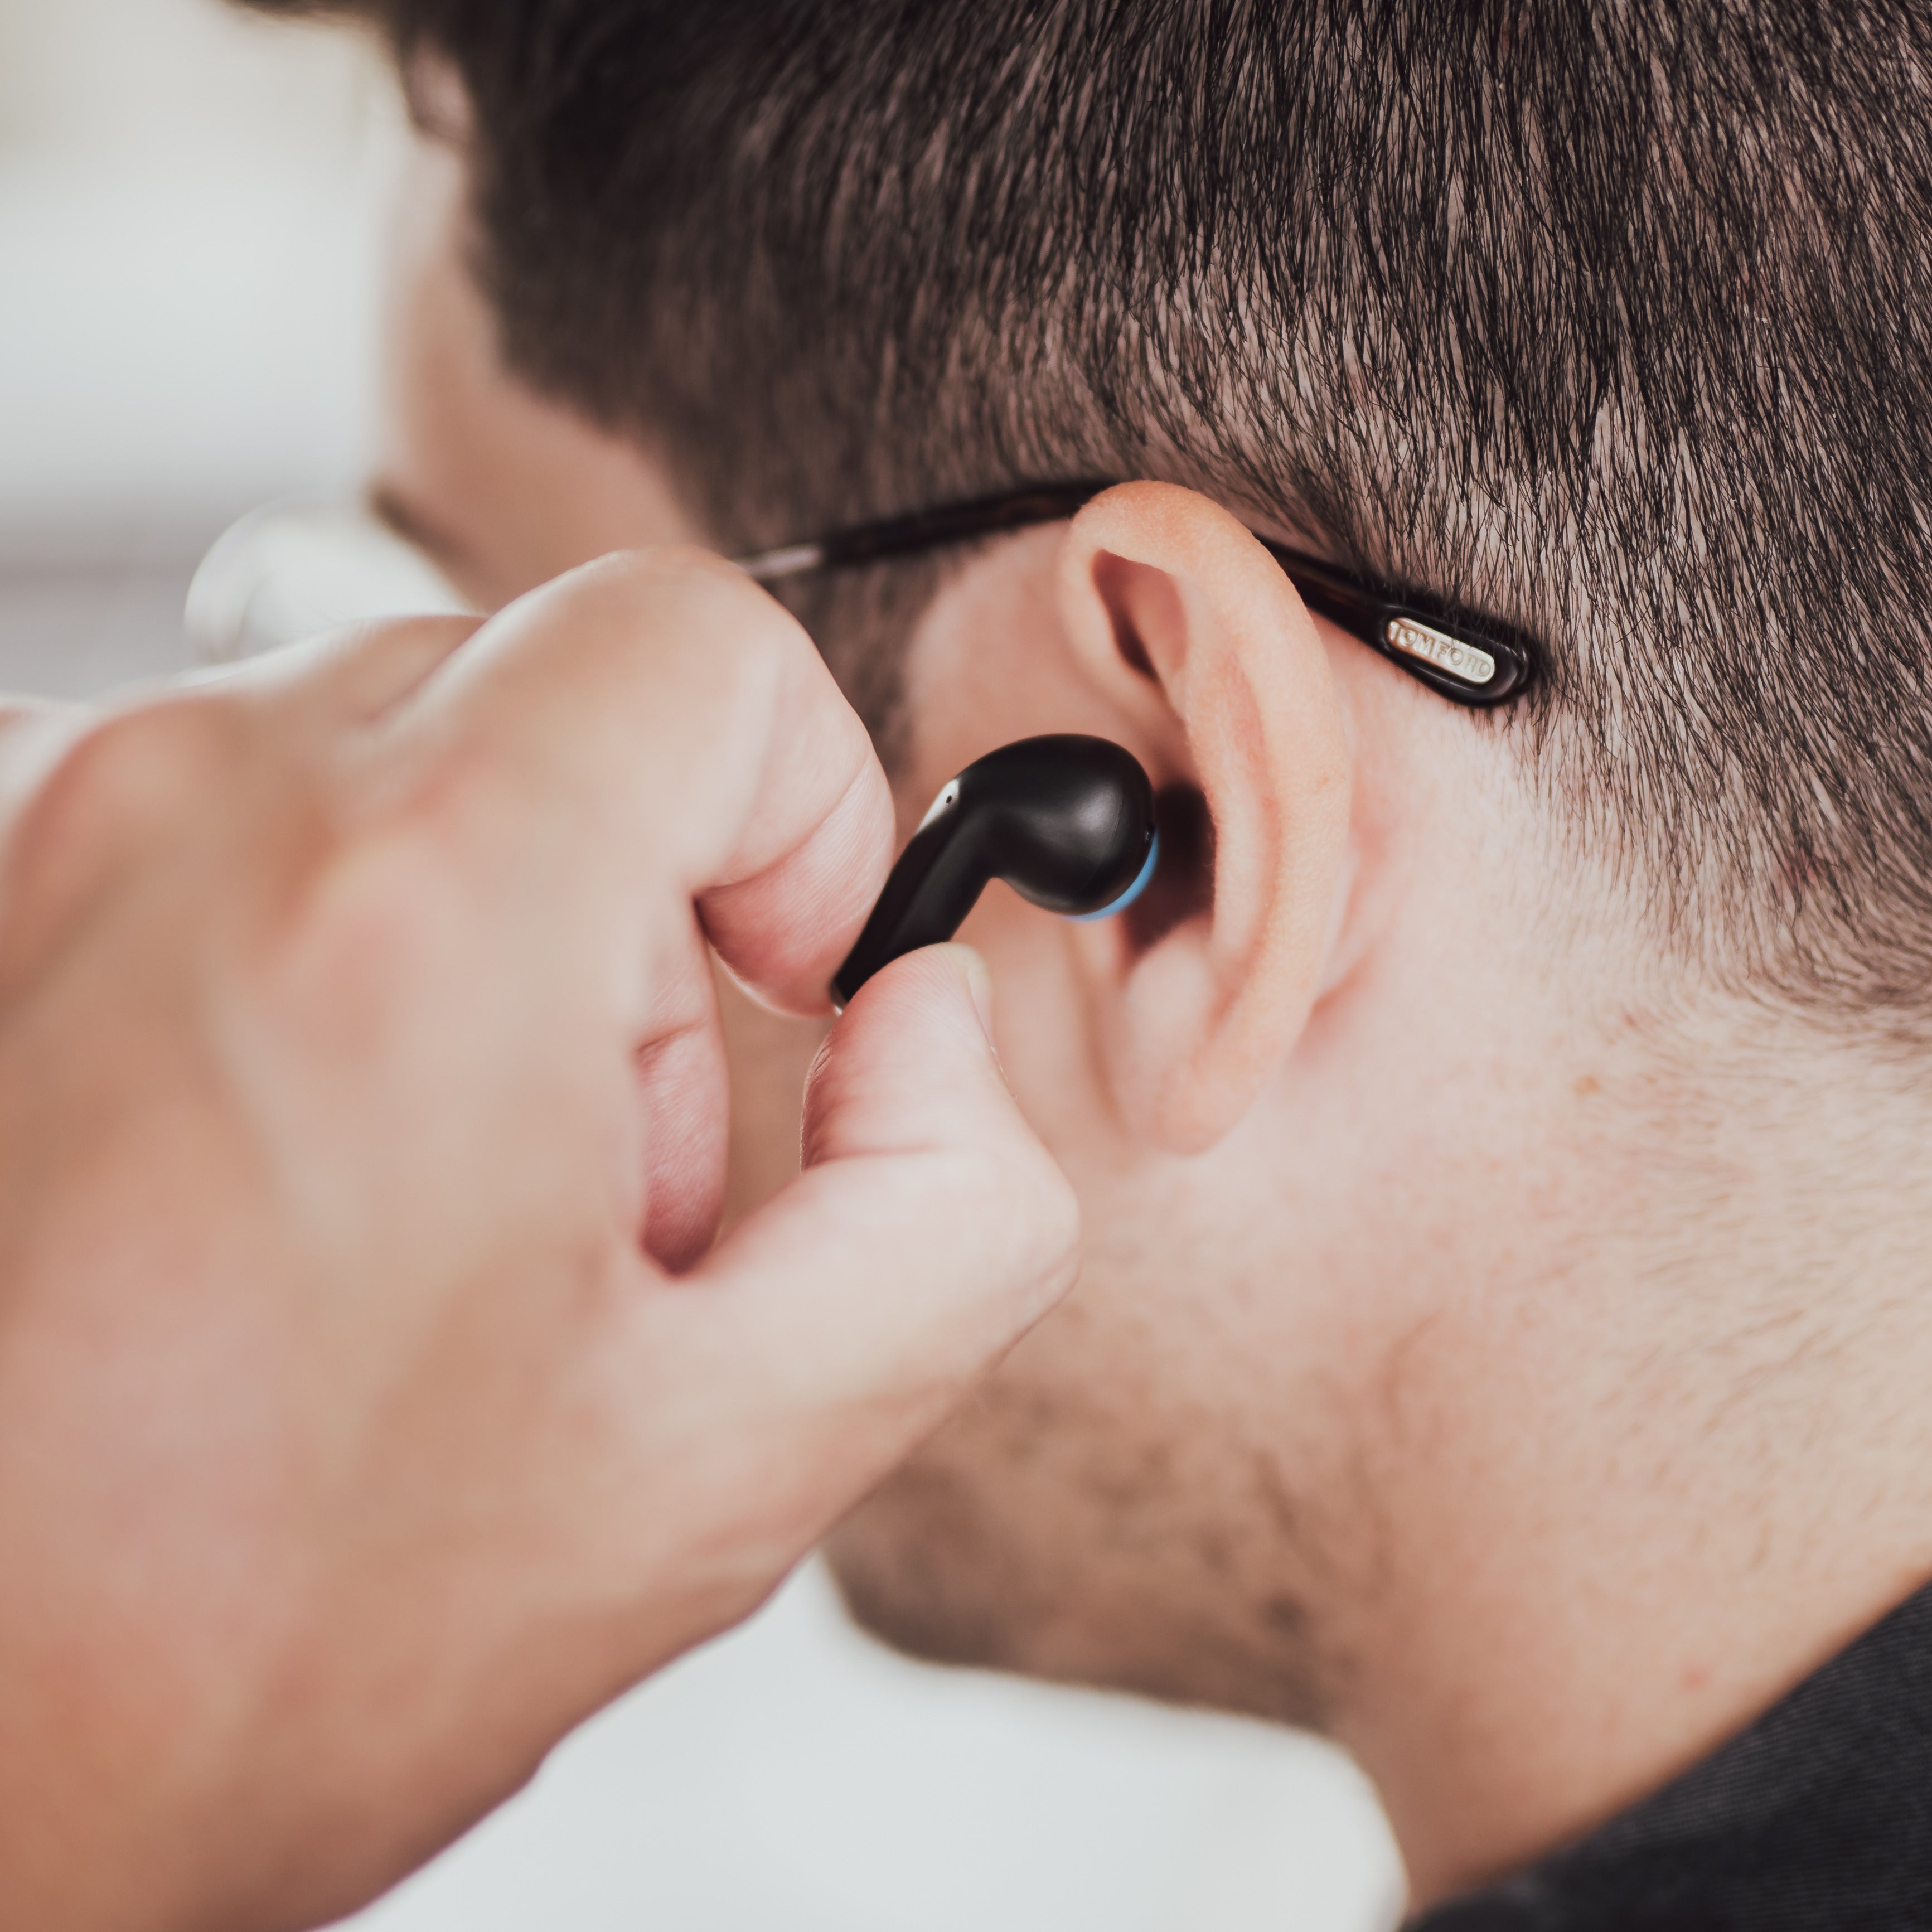 BLAUPUNKT TWS Bluetooth 20 In-ear WH, Wireless Weiss True In-Ear-Kopfhörer